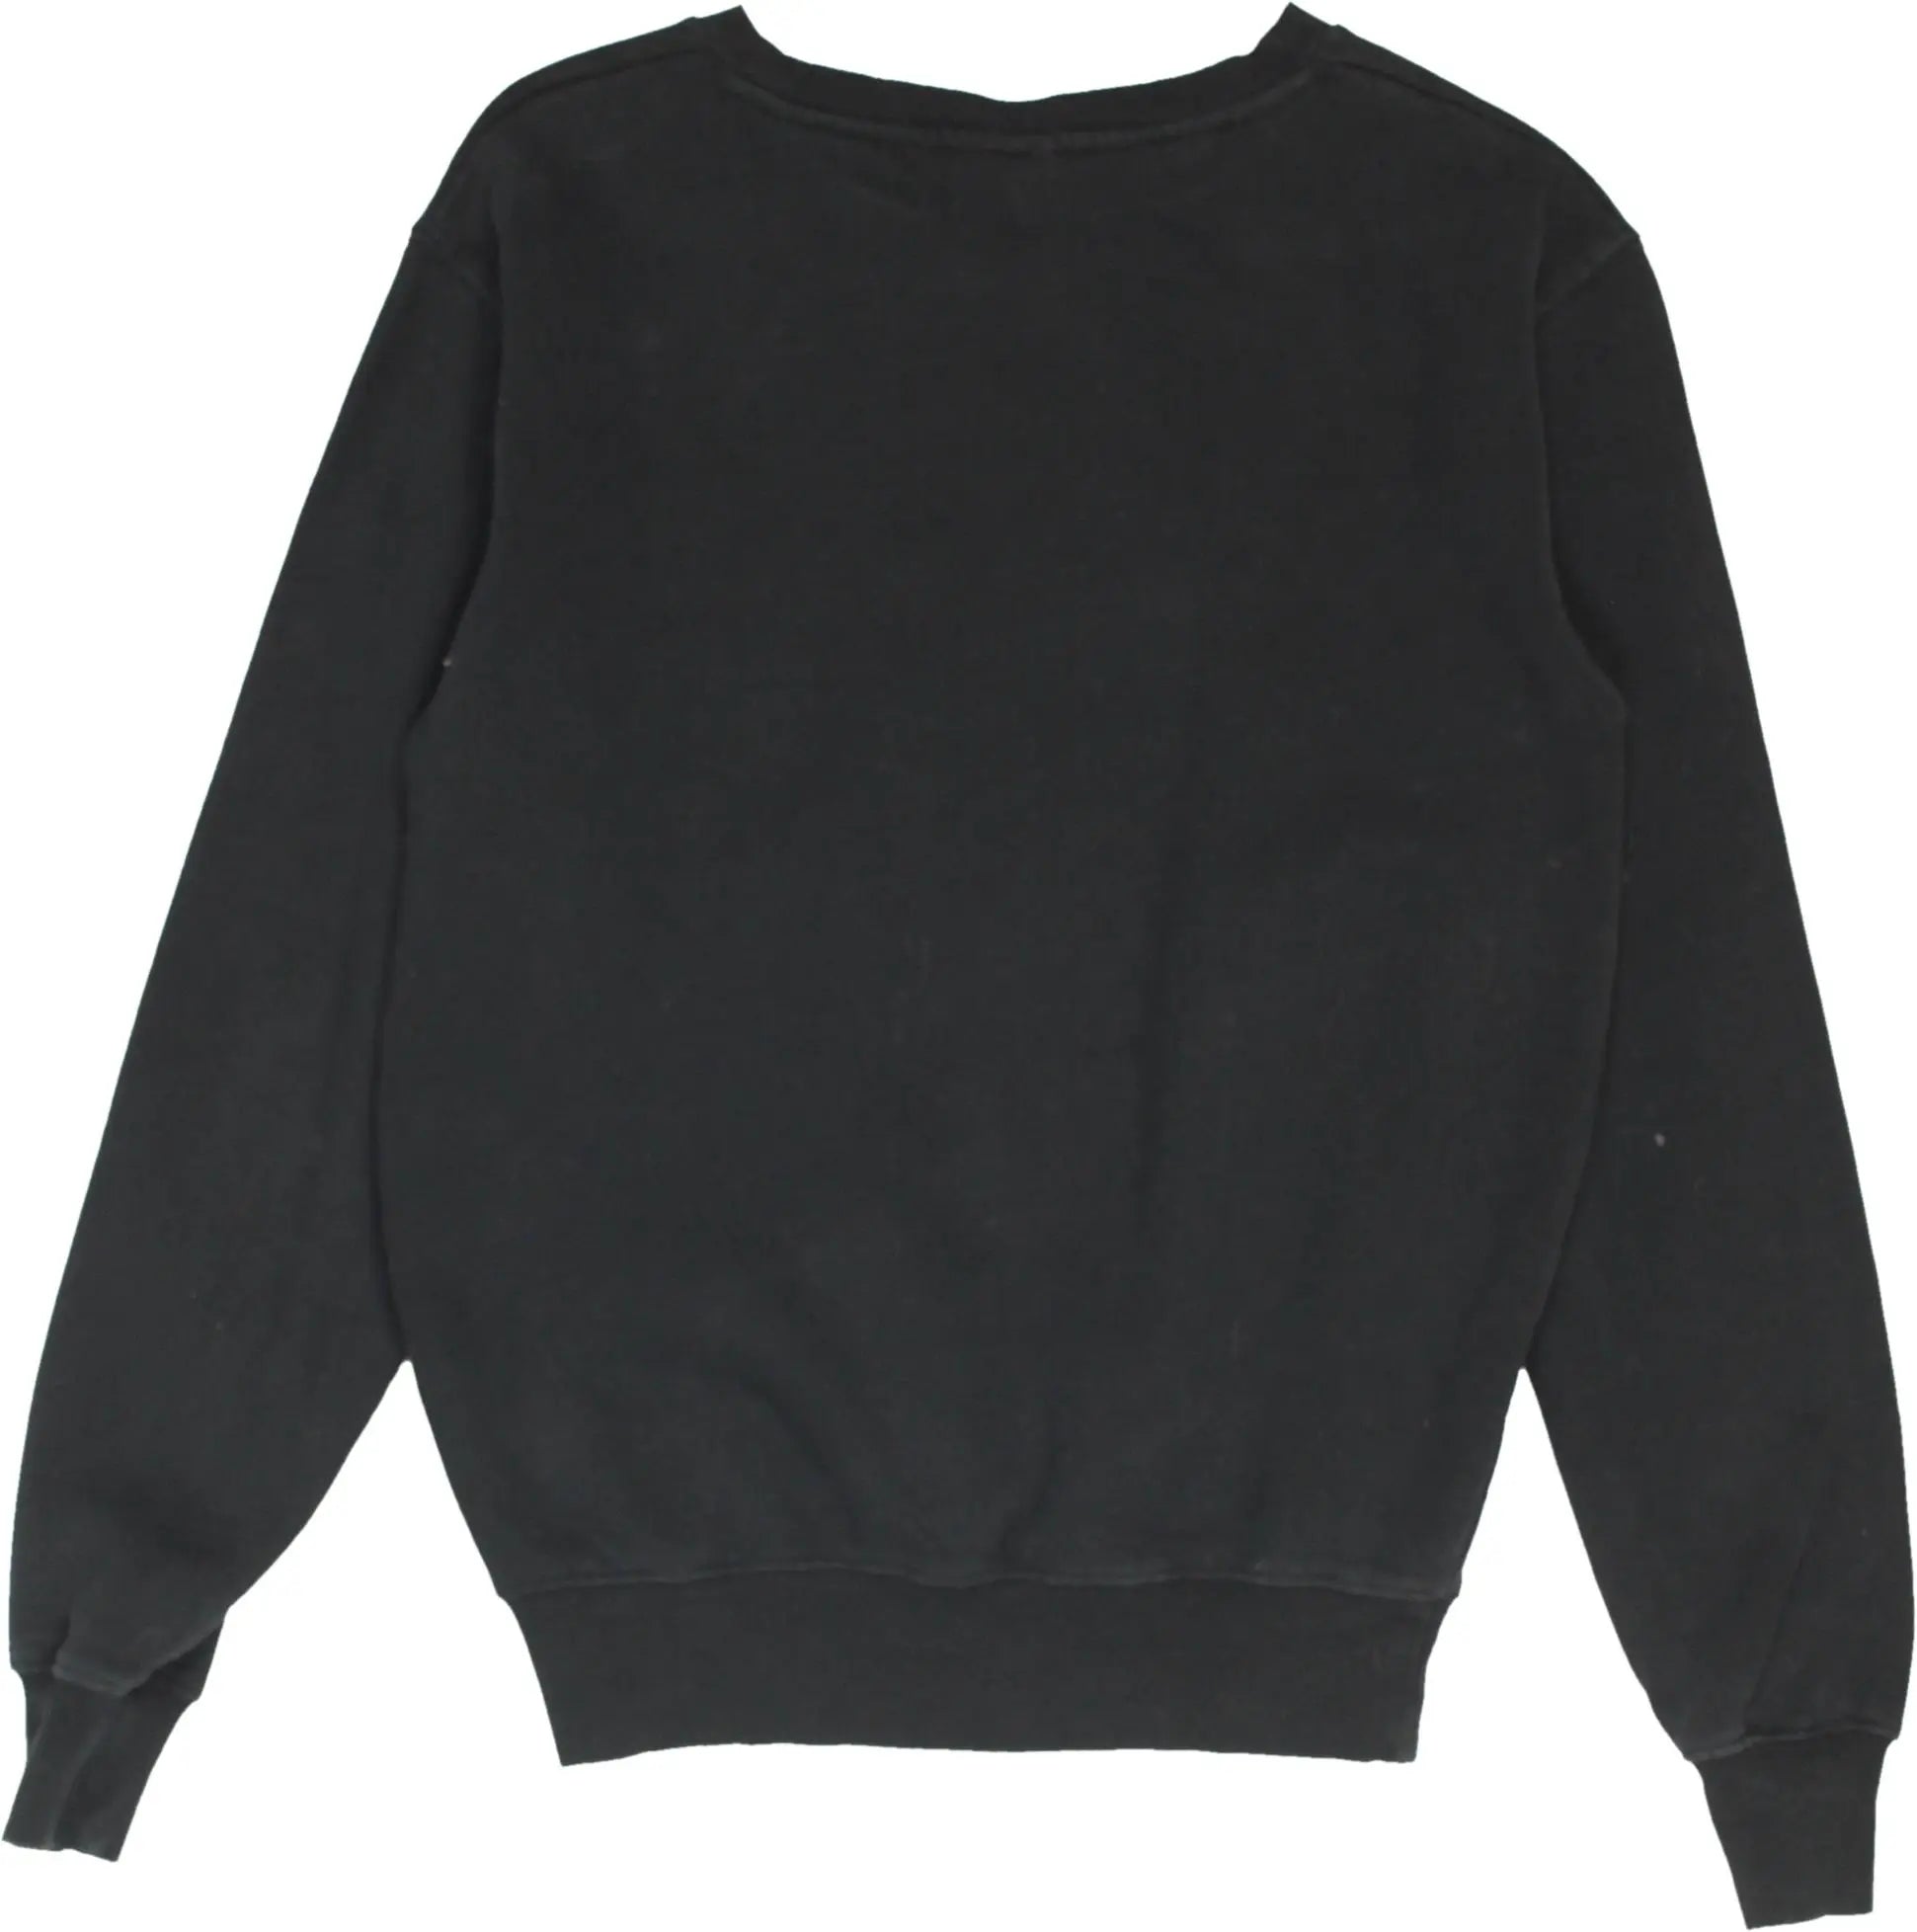 Ellesse - Black Ellesse sweater- ThriftTale.com - Vintage and second handclothing